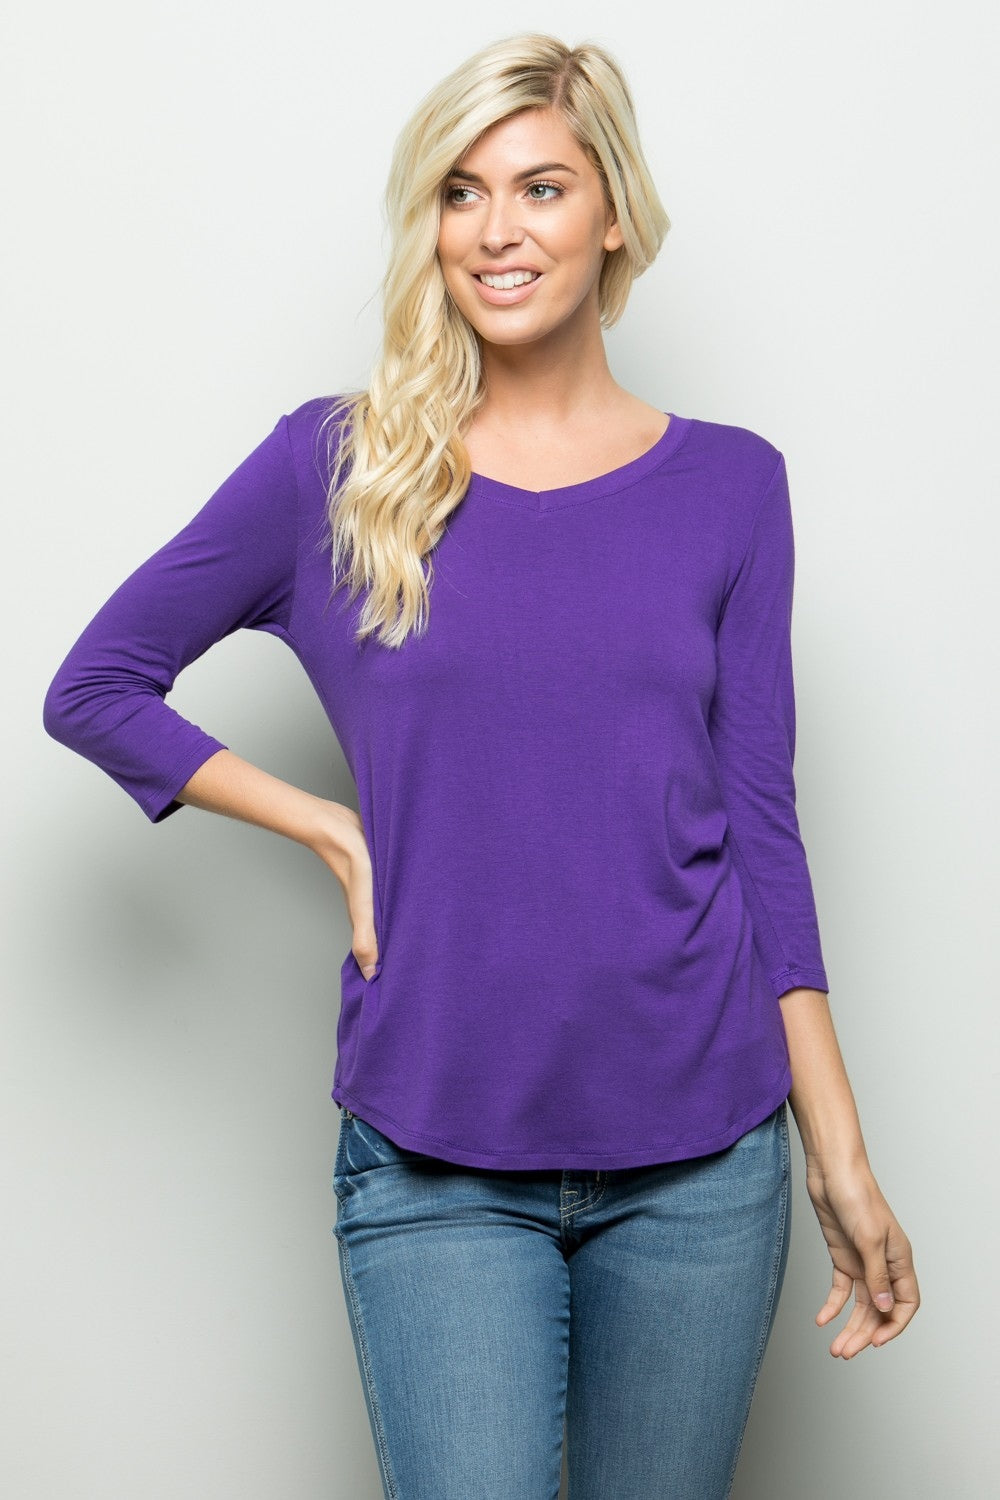 Celeste Full Size Three Quarter Sleeve V-Neck T-Shirt Purple